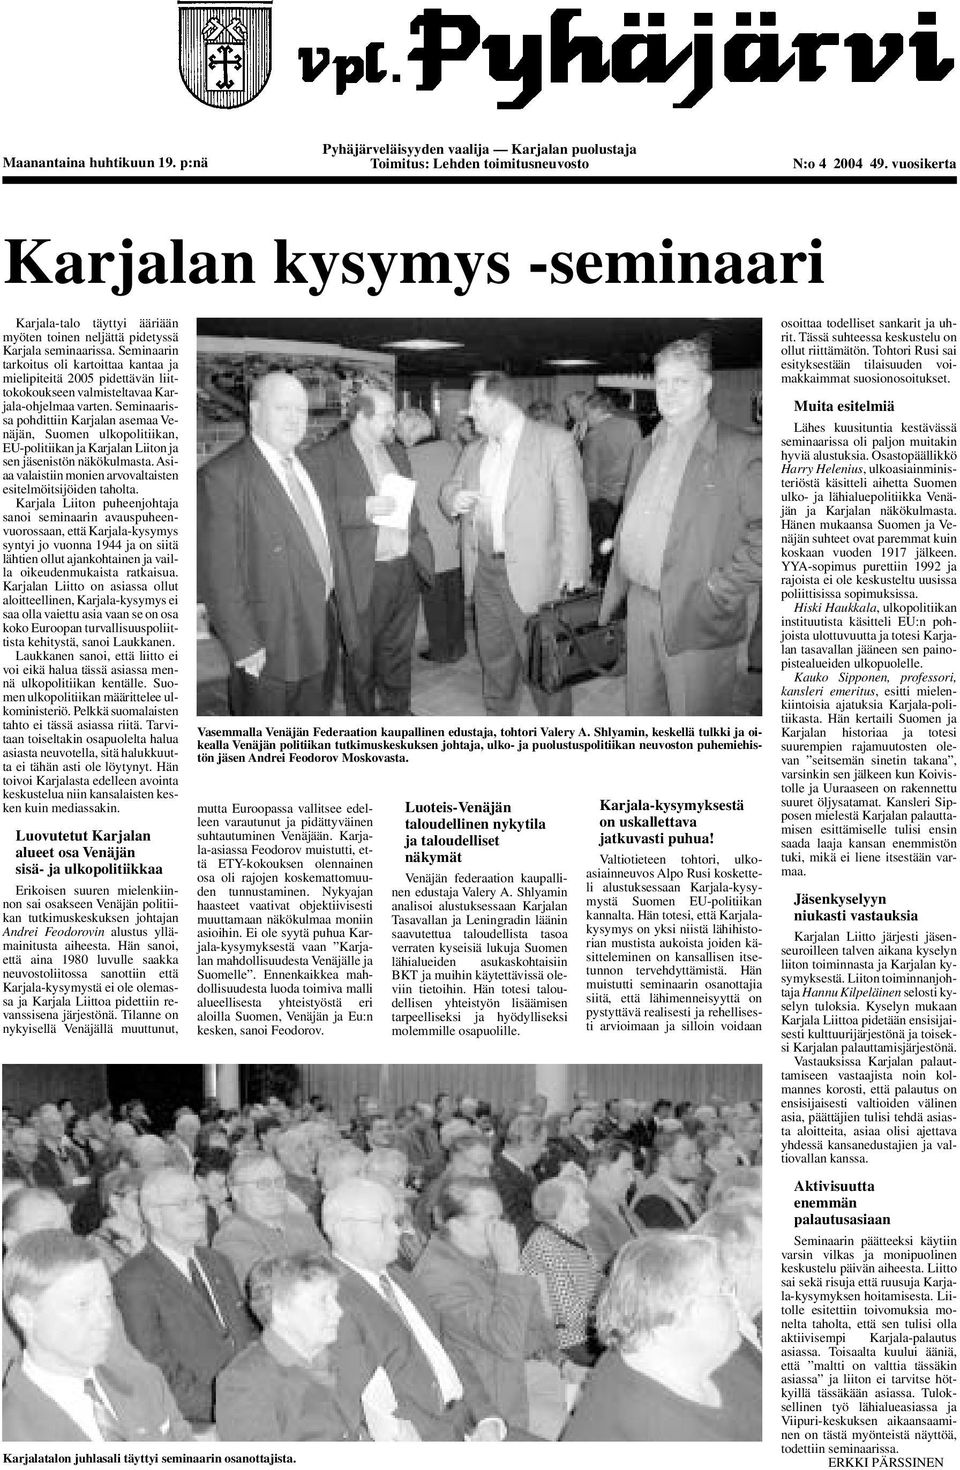 Seminaarin tarkoitus oli kartoittaa kantaa ja mielipiteitä 2005 pidettävän liittokokoukseen valmisteltavaa Karjala-ohjelmaa varten.